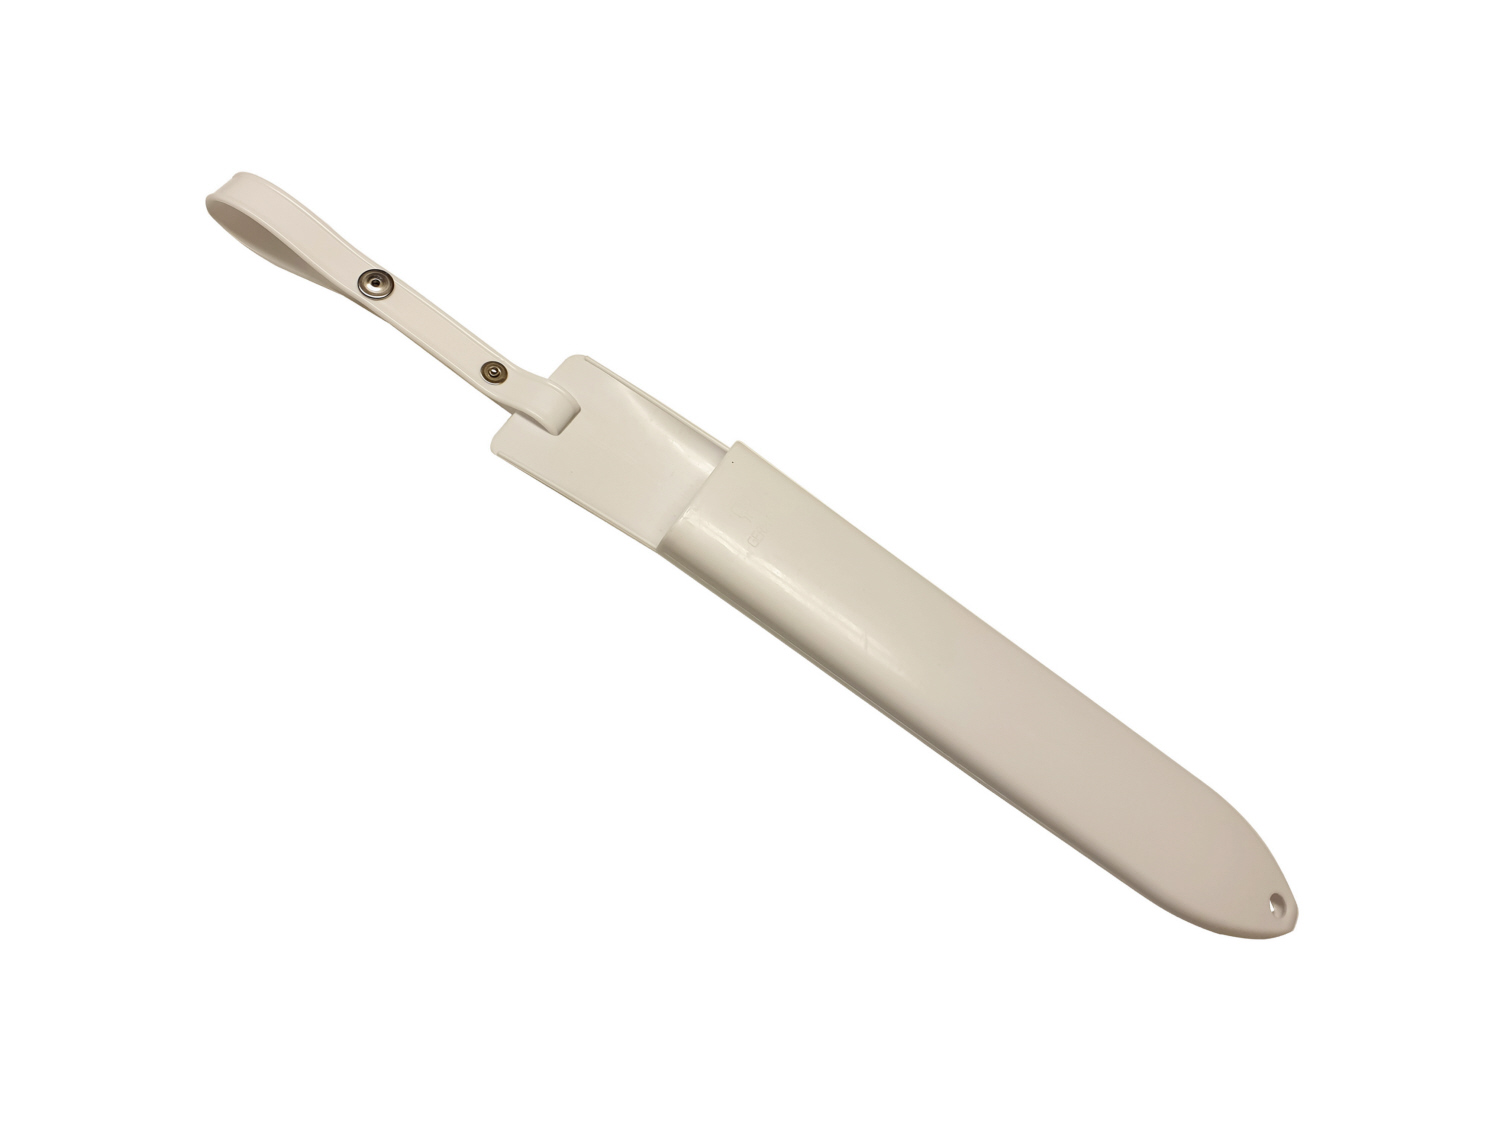 Messerscheide für 1 Messer - Farbe weiß